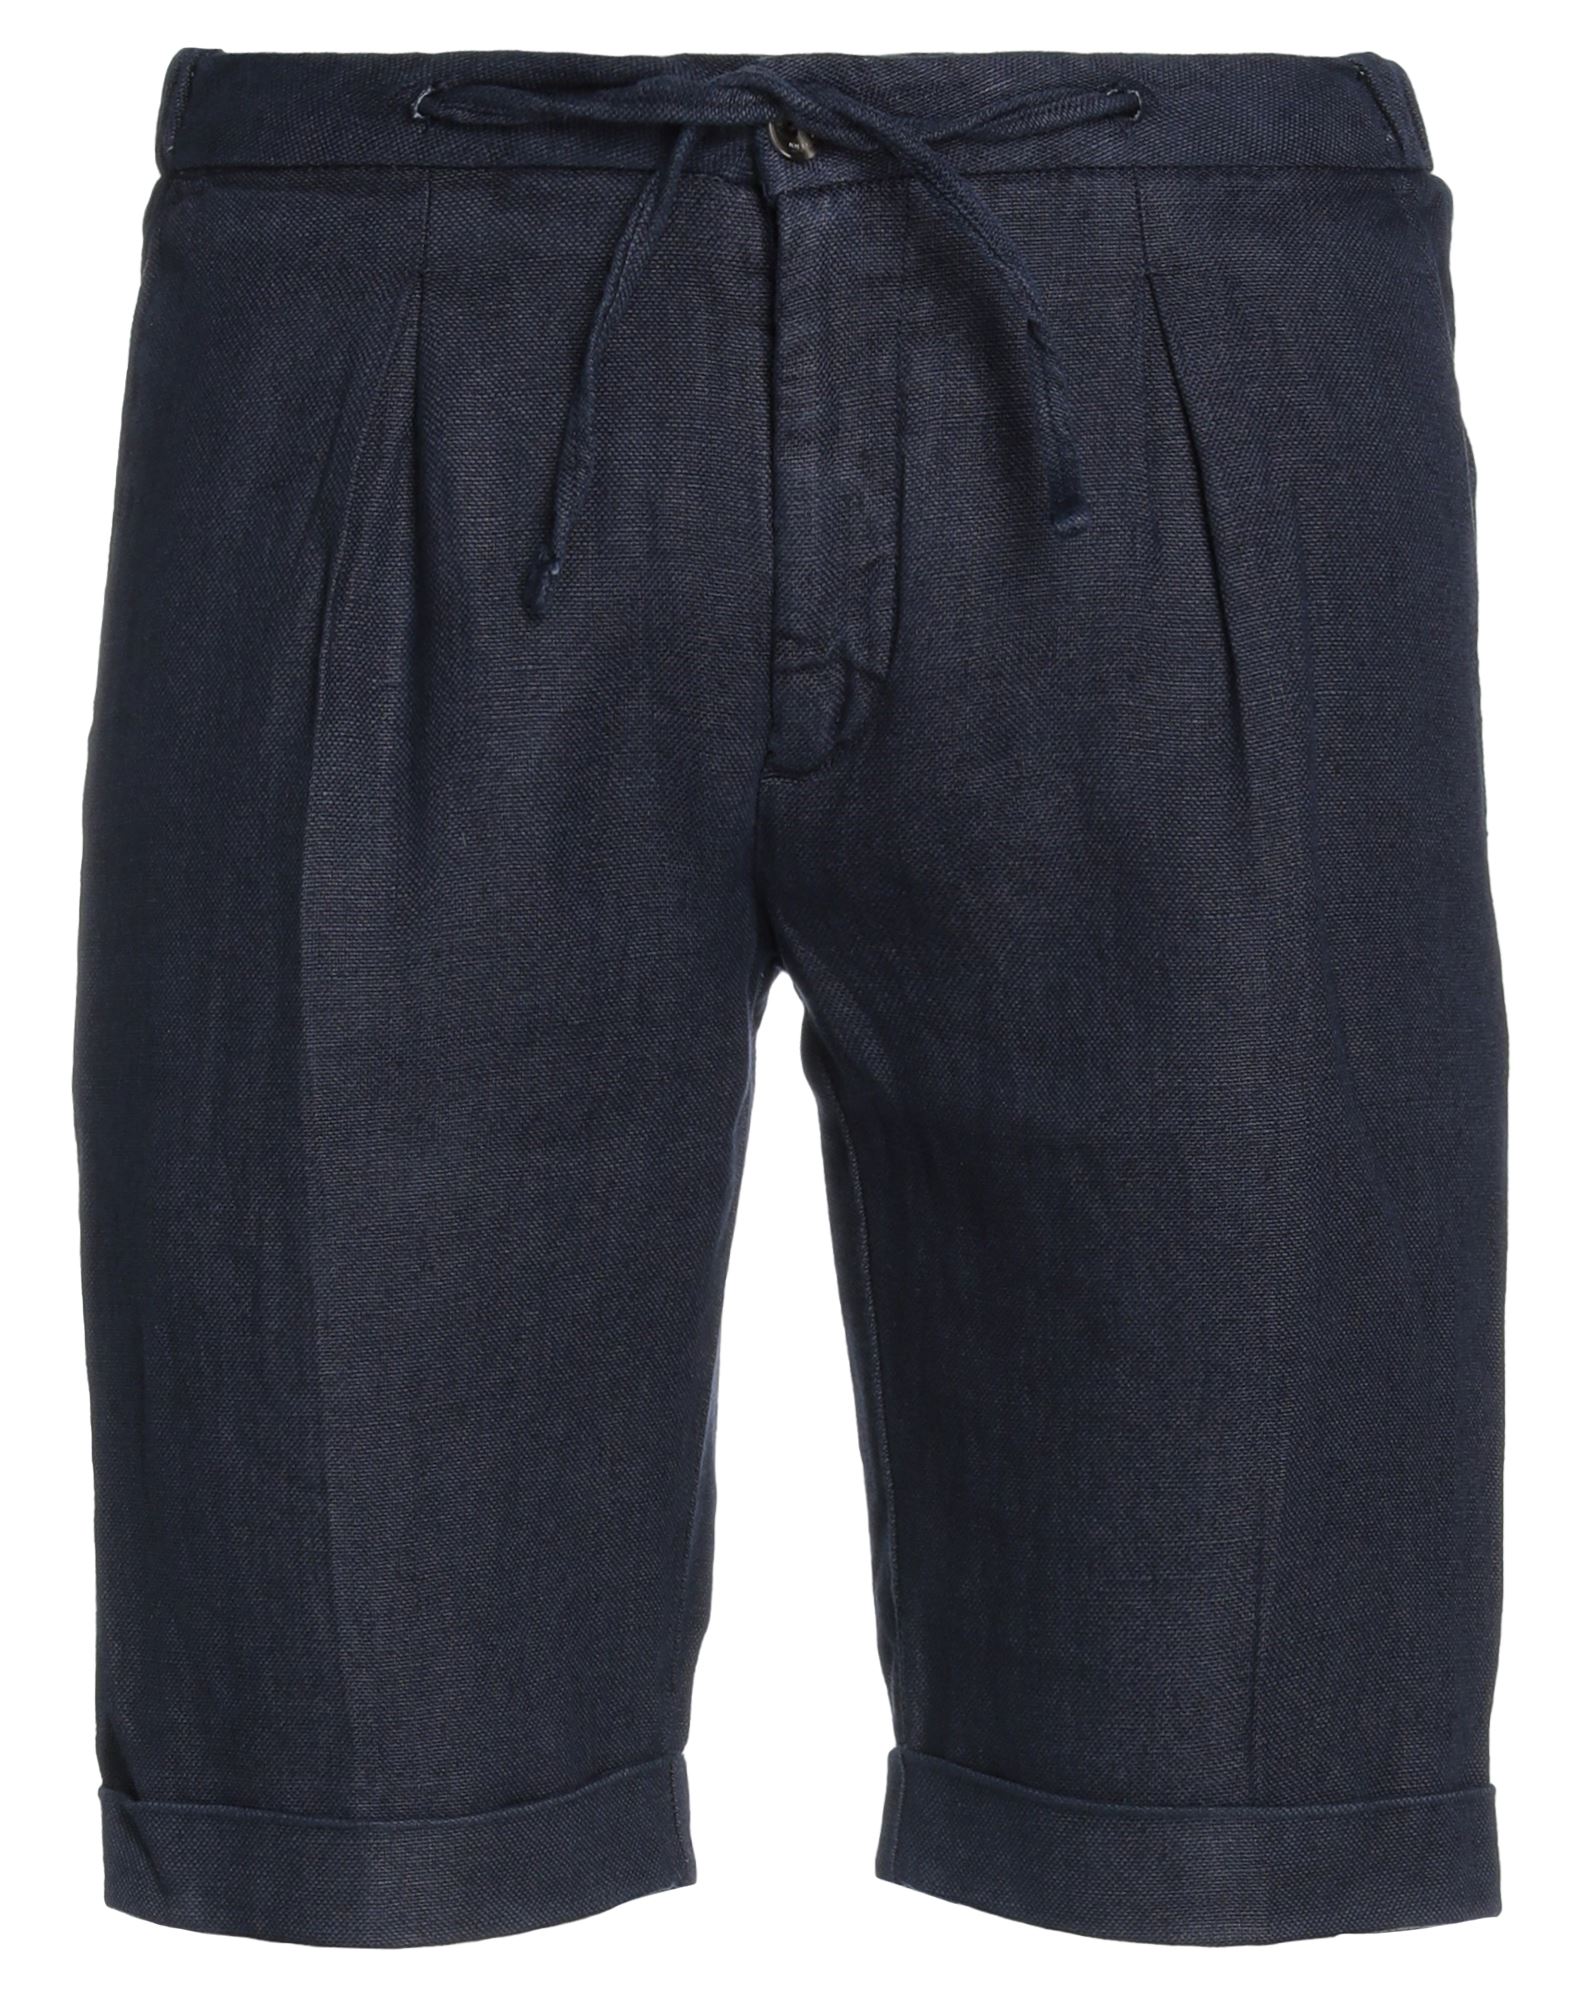 Bulgarini Man Shorts & Bermuda Shorts Midnight Blue Size 38 Linen